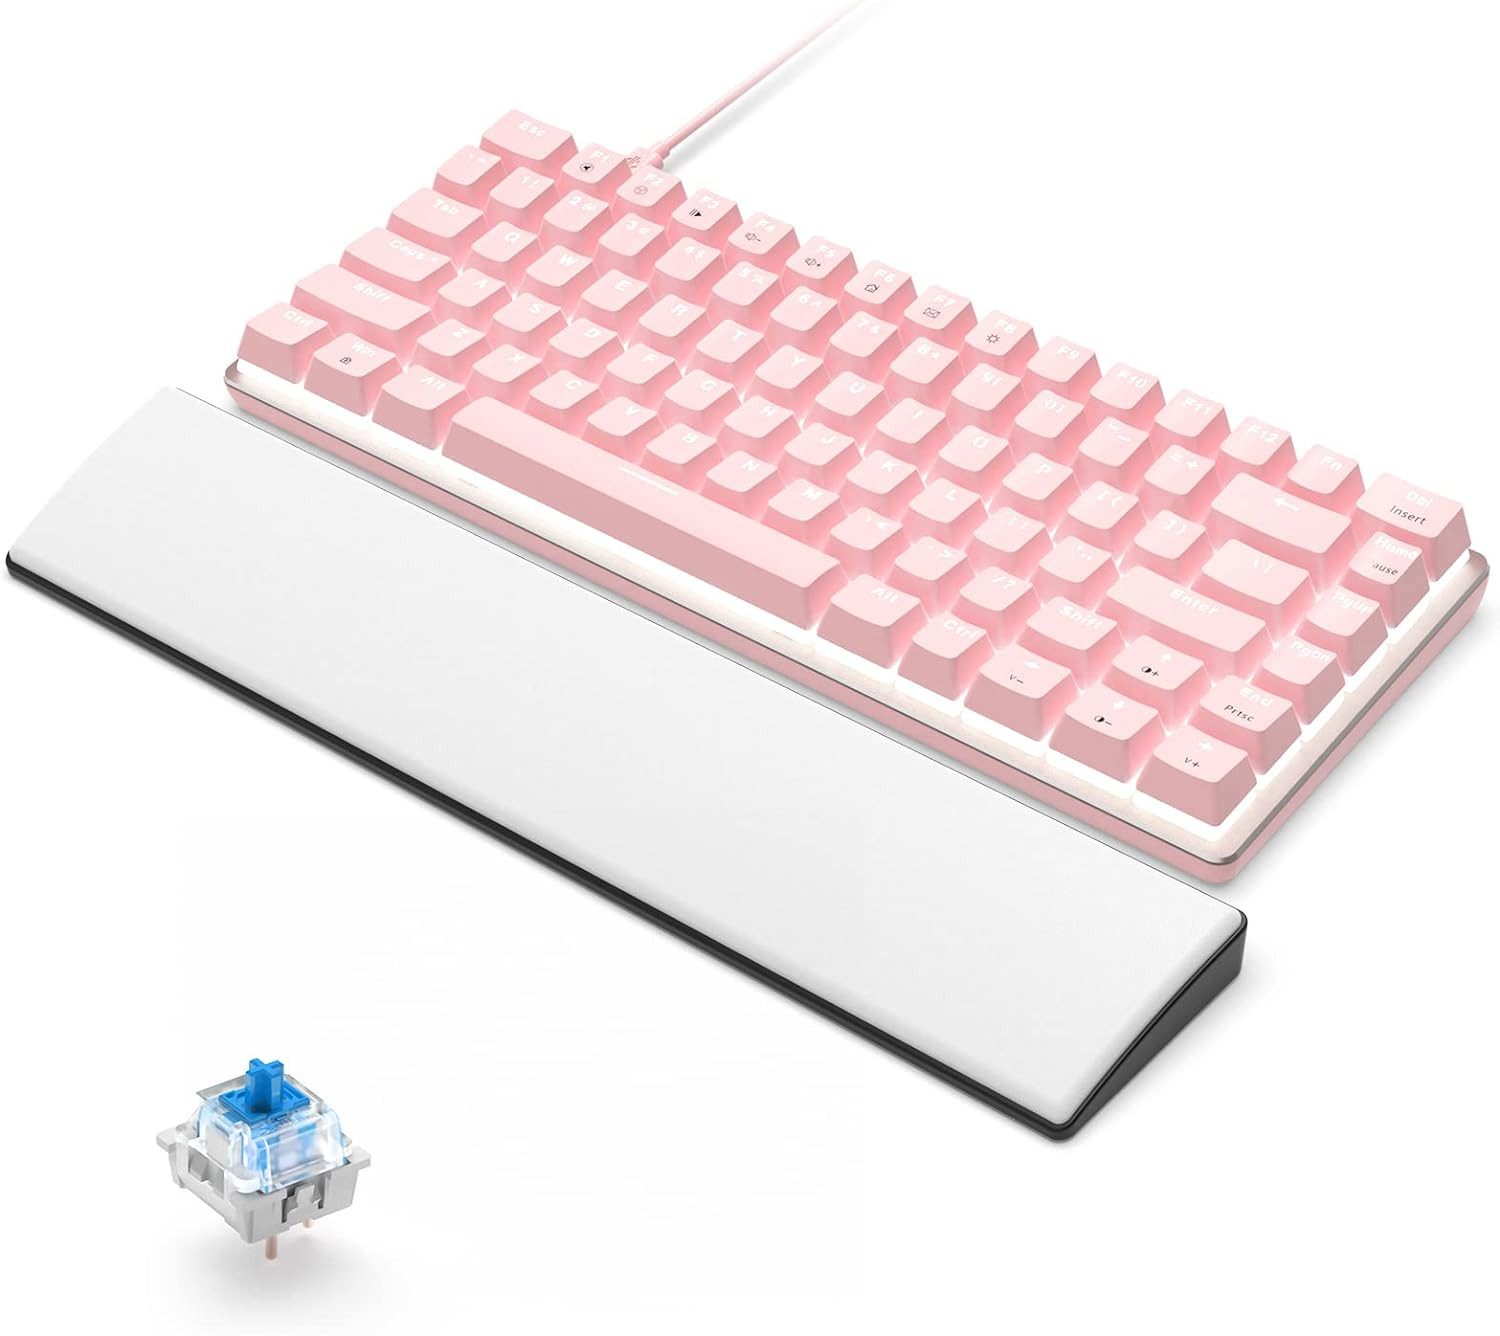 CROSS ZEBRA RGB Hintergrundbeleuchtung Gaming-Tastatur (Anti-Ghosting, Hochwertige Materialien, Mattes Finish, mit Double-Shot)